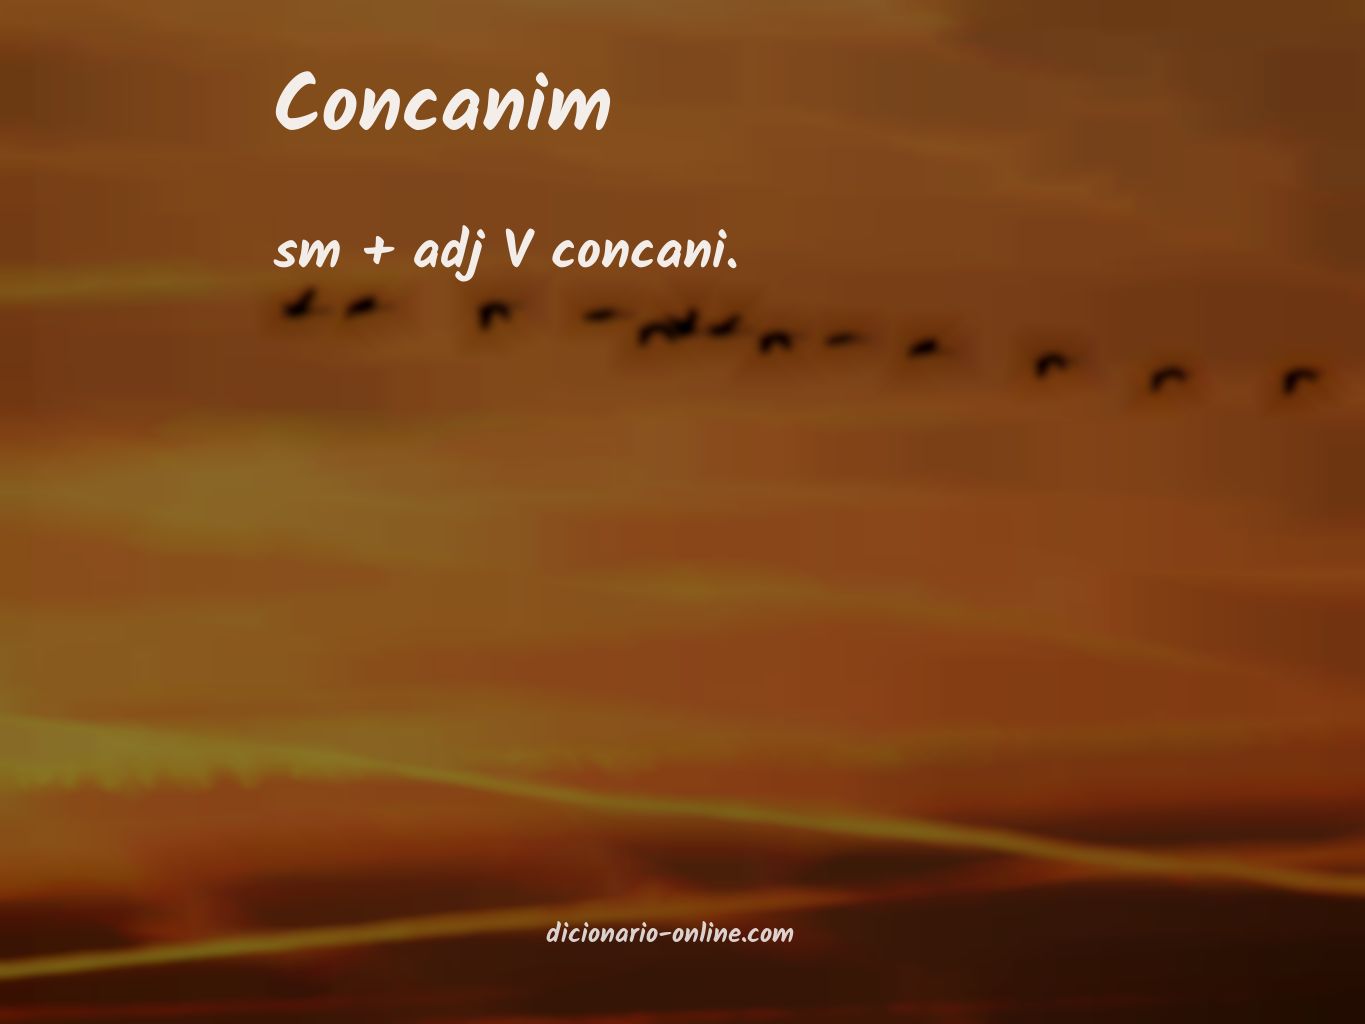 Significado de concanim